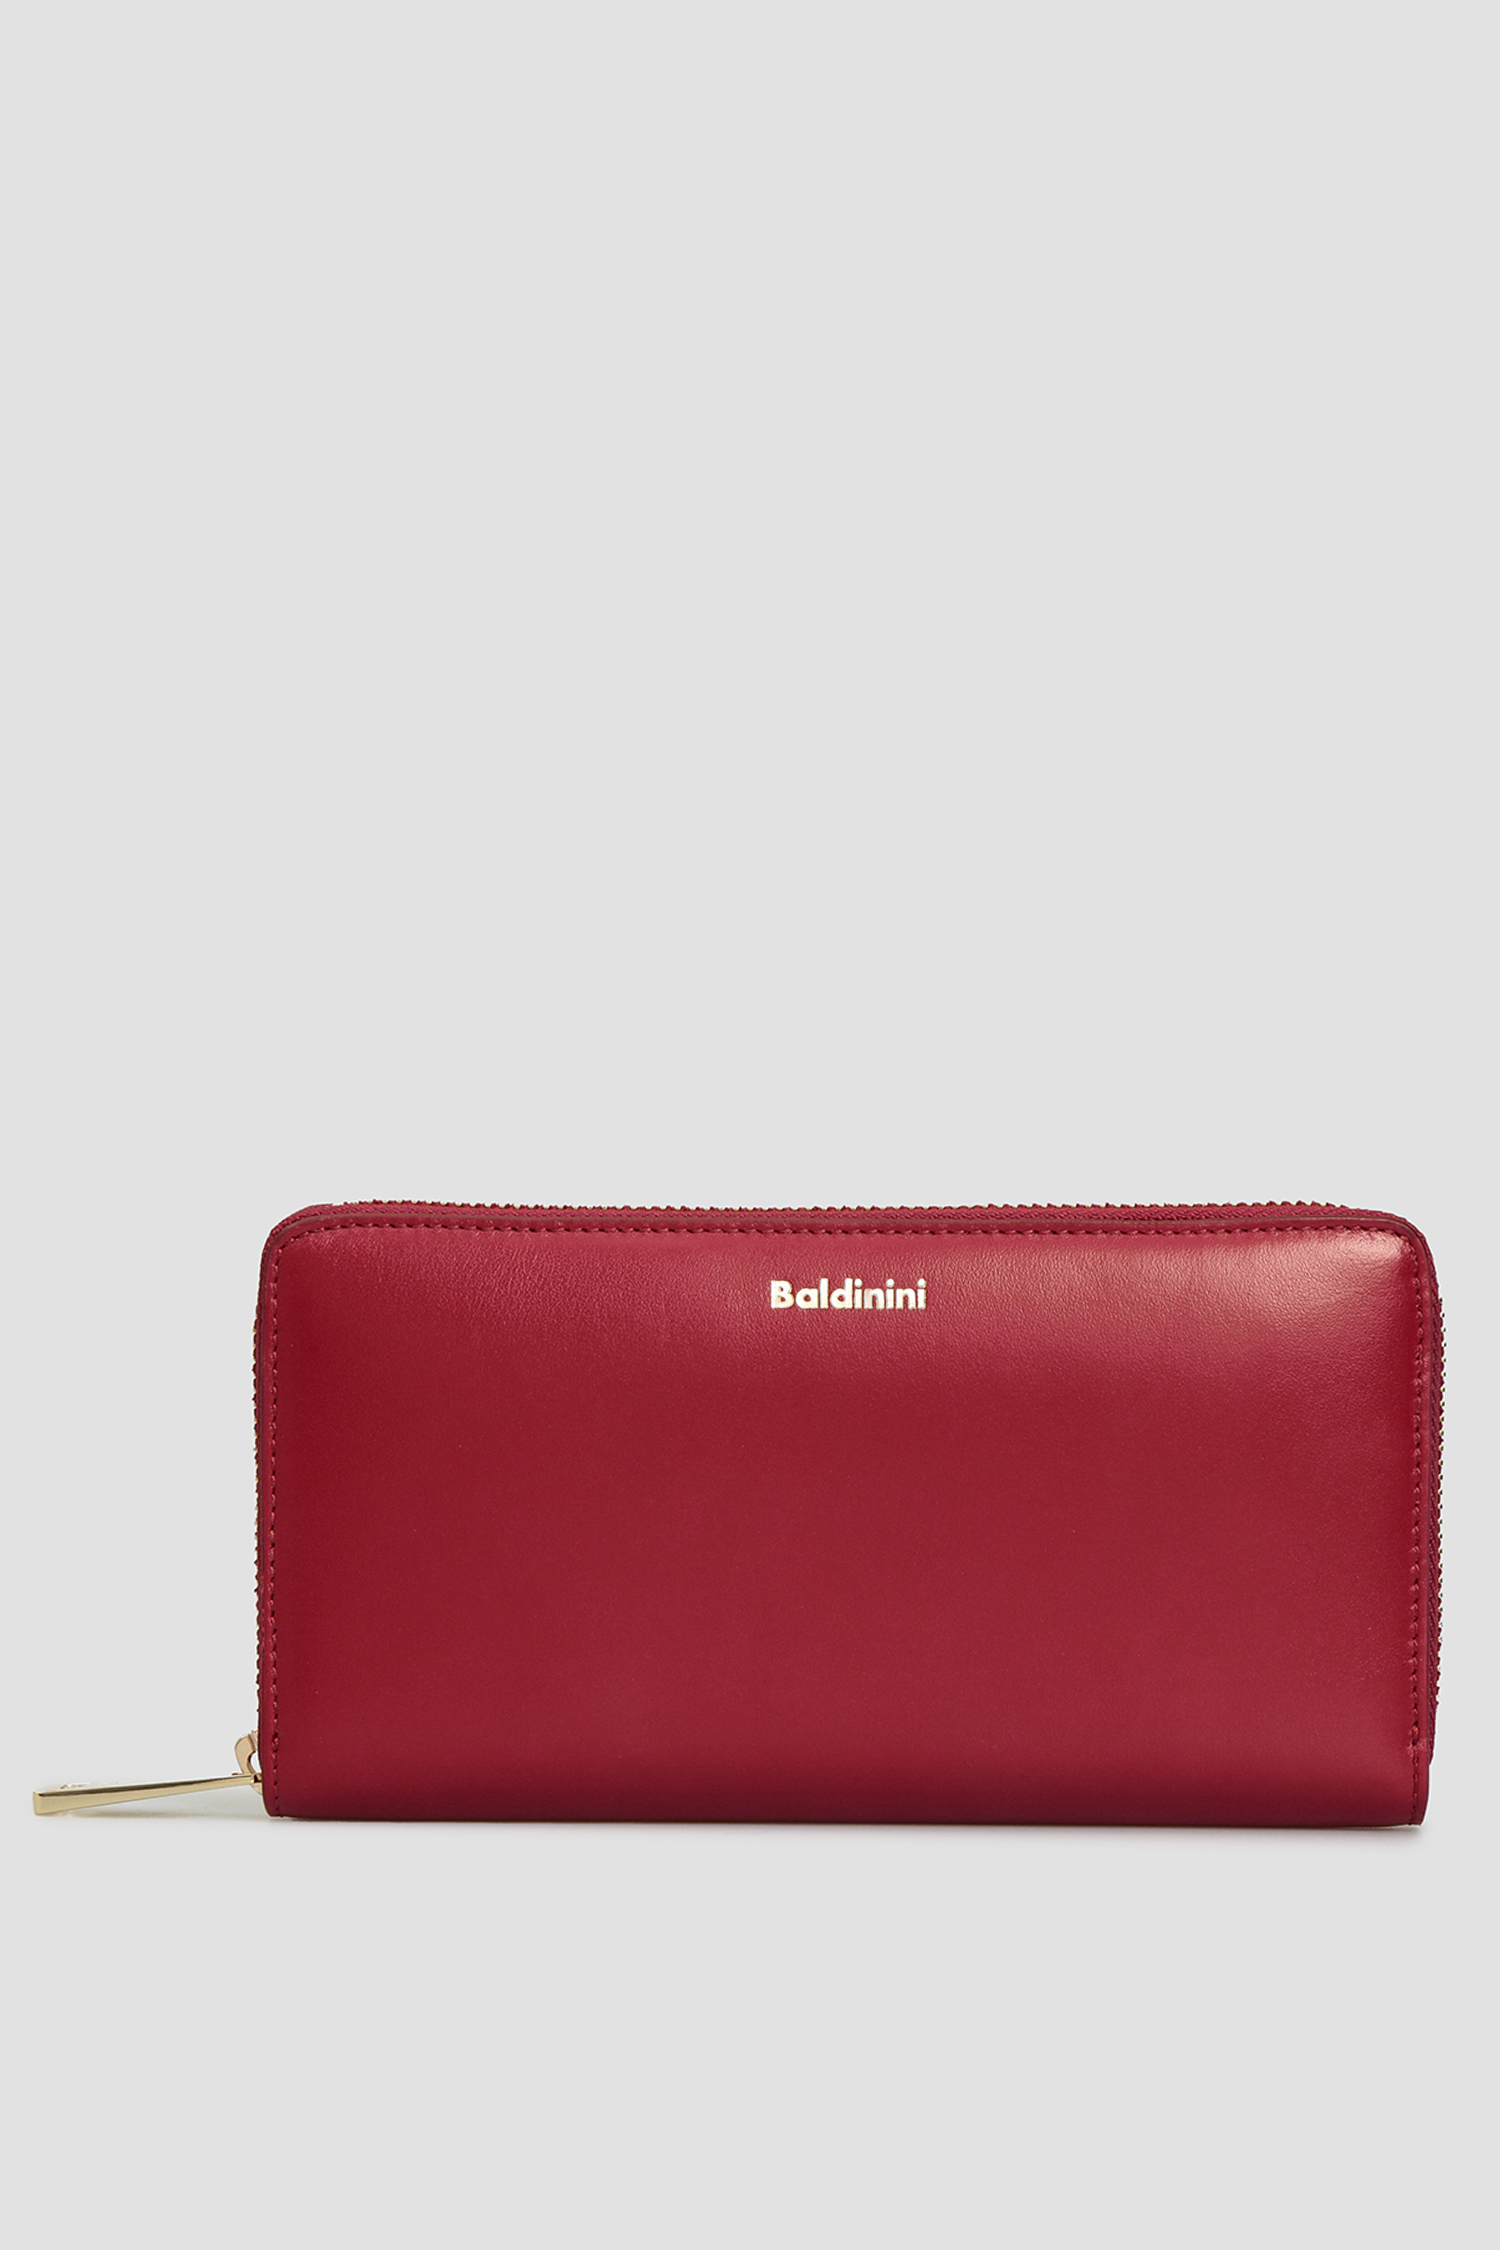 Жіночий бордовий шкіряний гаманець Baldinini P2B002FIRE;7040